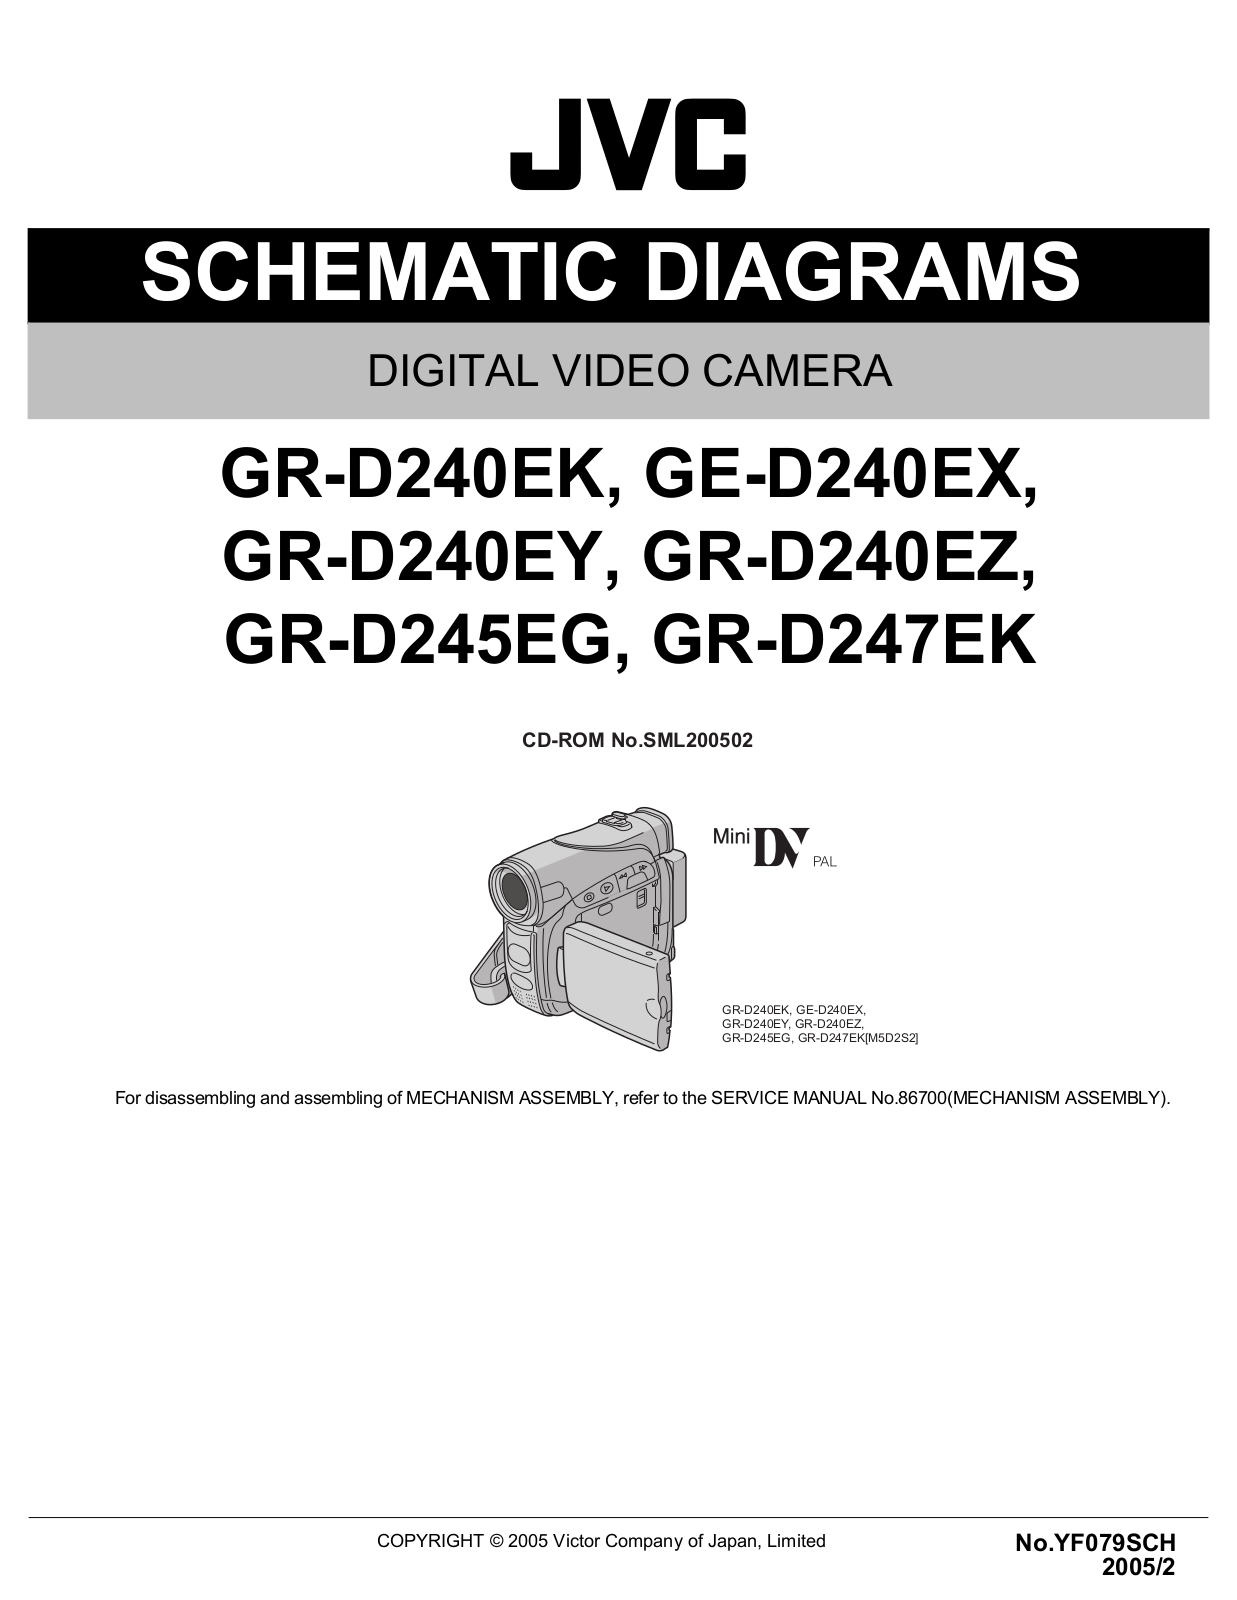 JVC GE-D240EX, GR-D240EK, GR-D240EY, GR-D240EZ, GR-D245EG Schematics